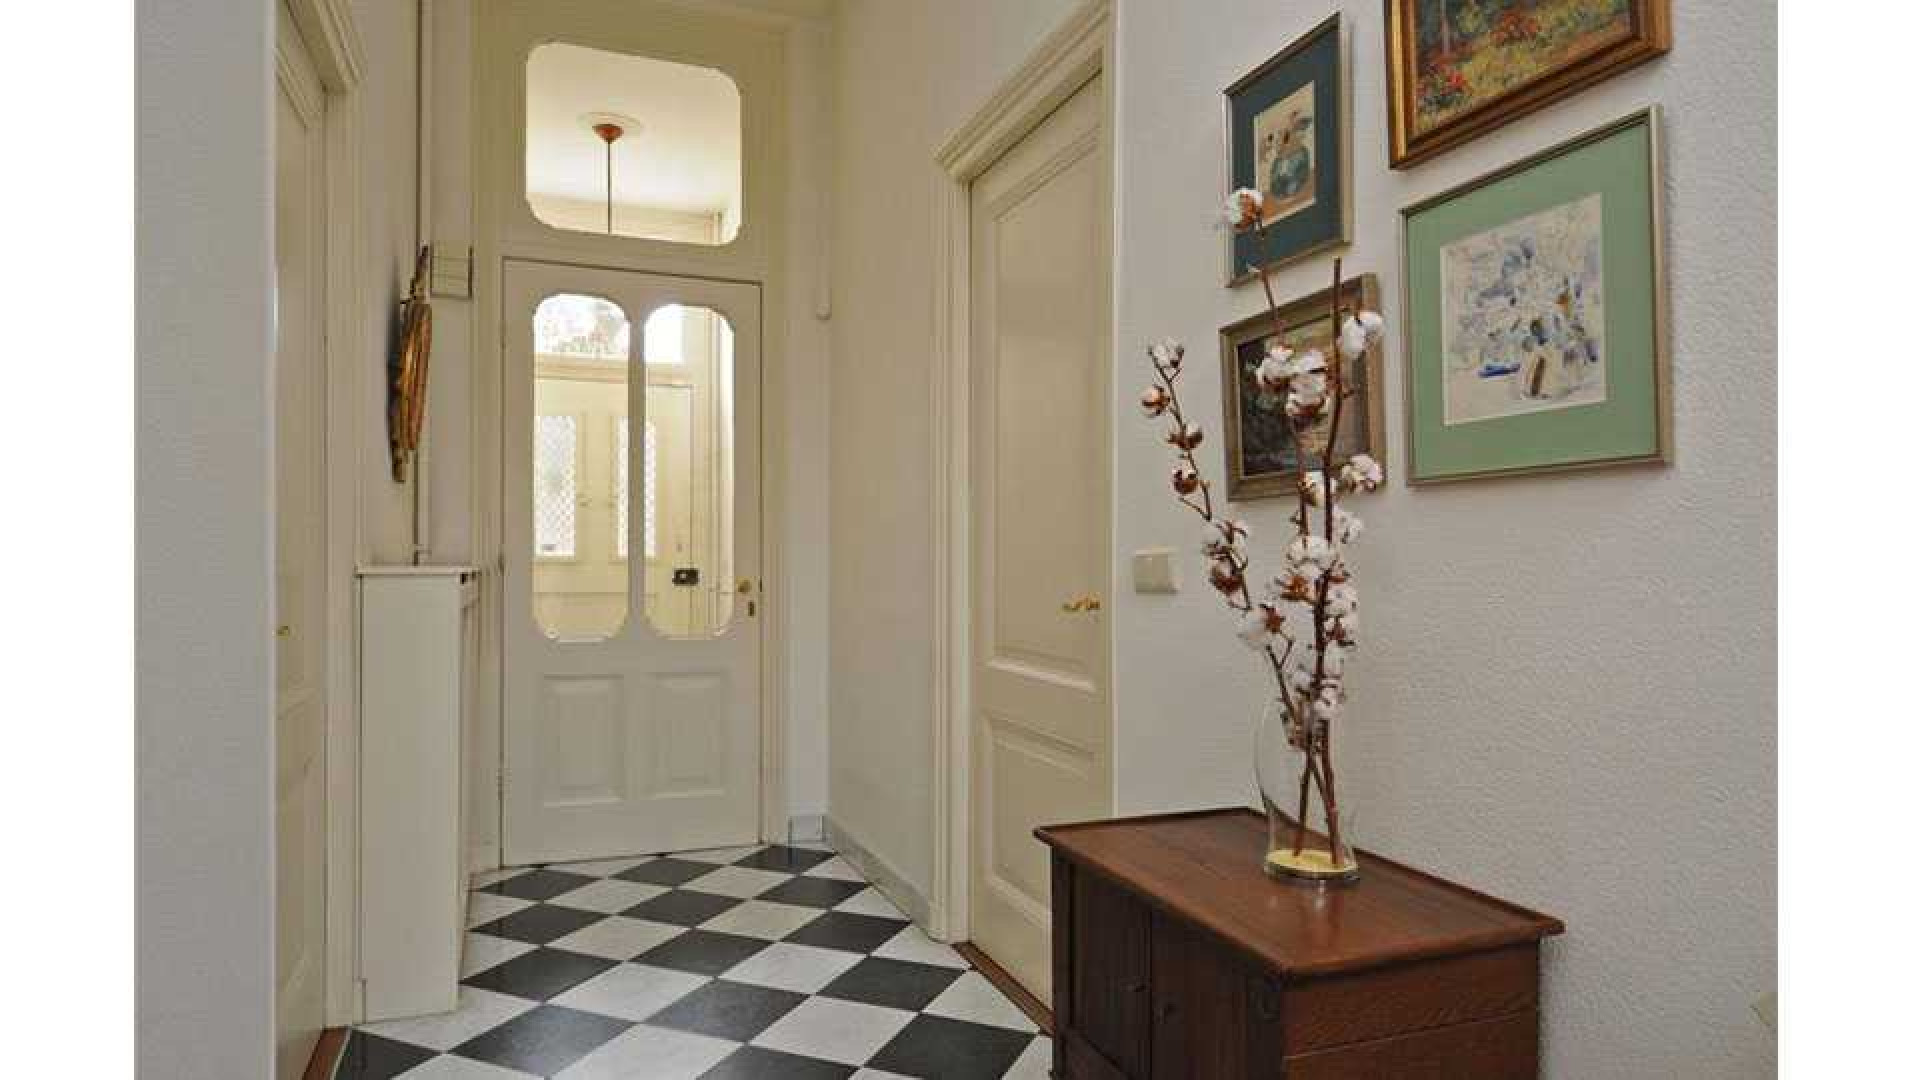 Frits Sissing scoort vette winst op verkoop van zijn oude huis. Zie foto's